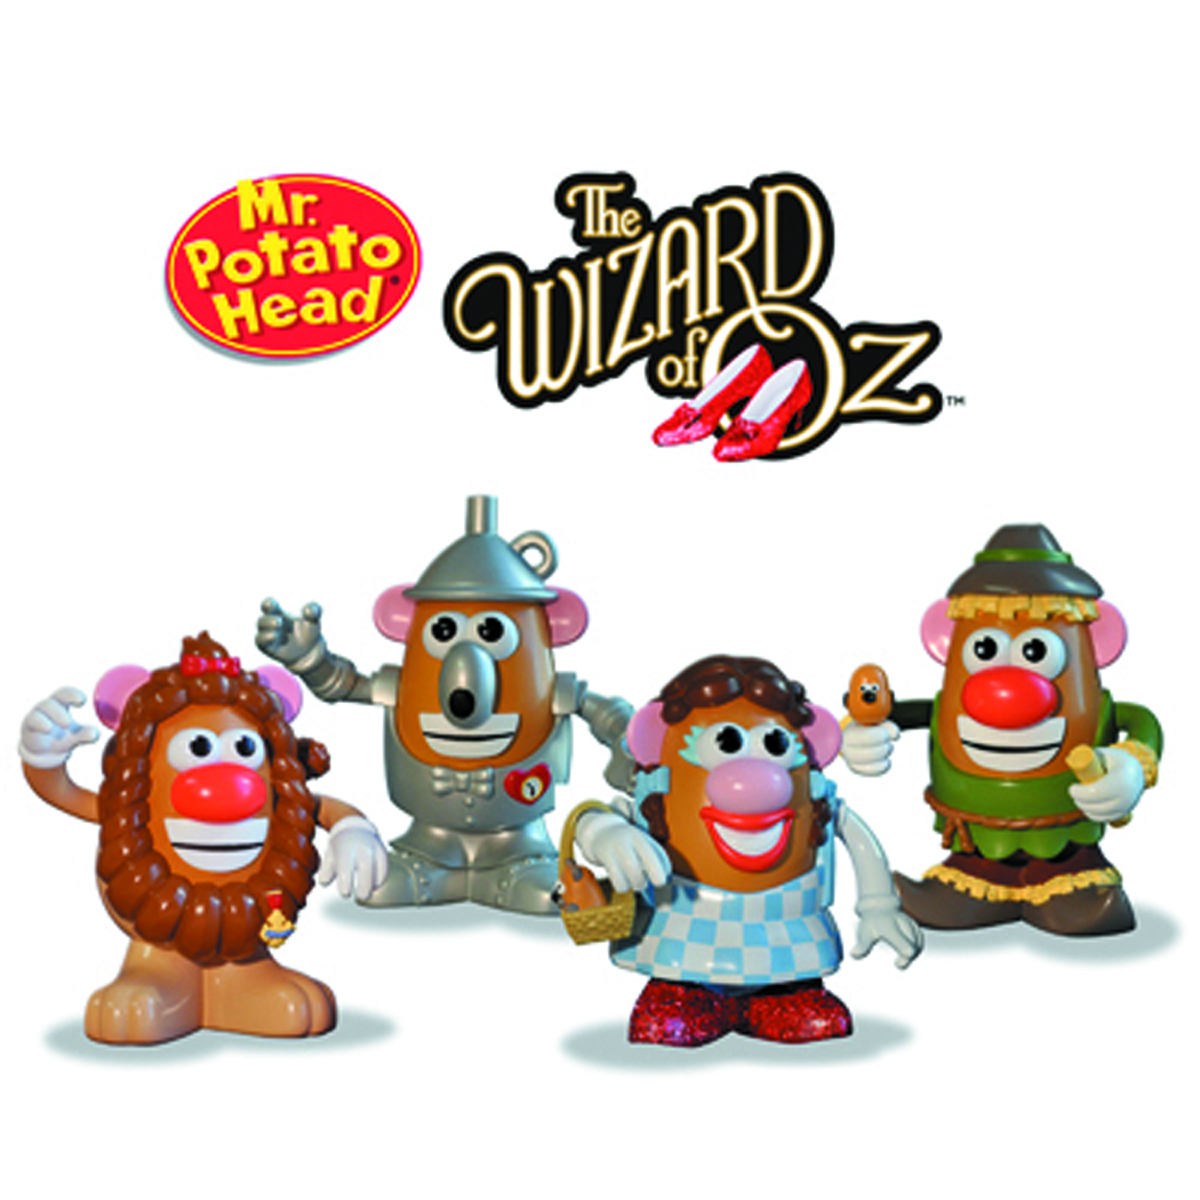 WIZARD OF OZ Dorothy PopTaters Mr Potato Head Figurine PPW Toys #NEW 